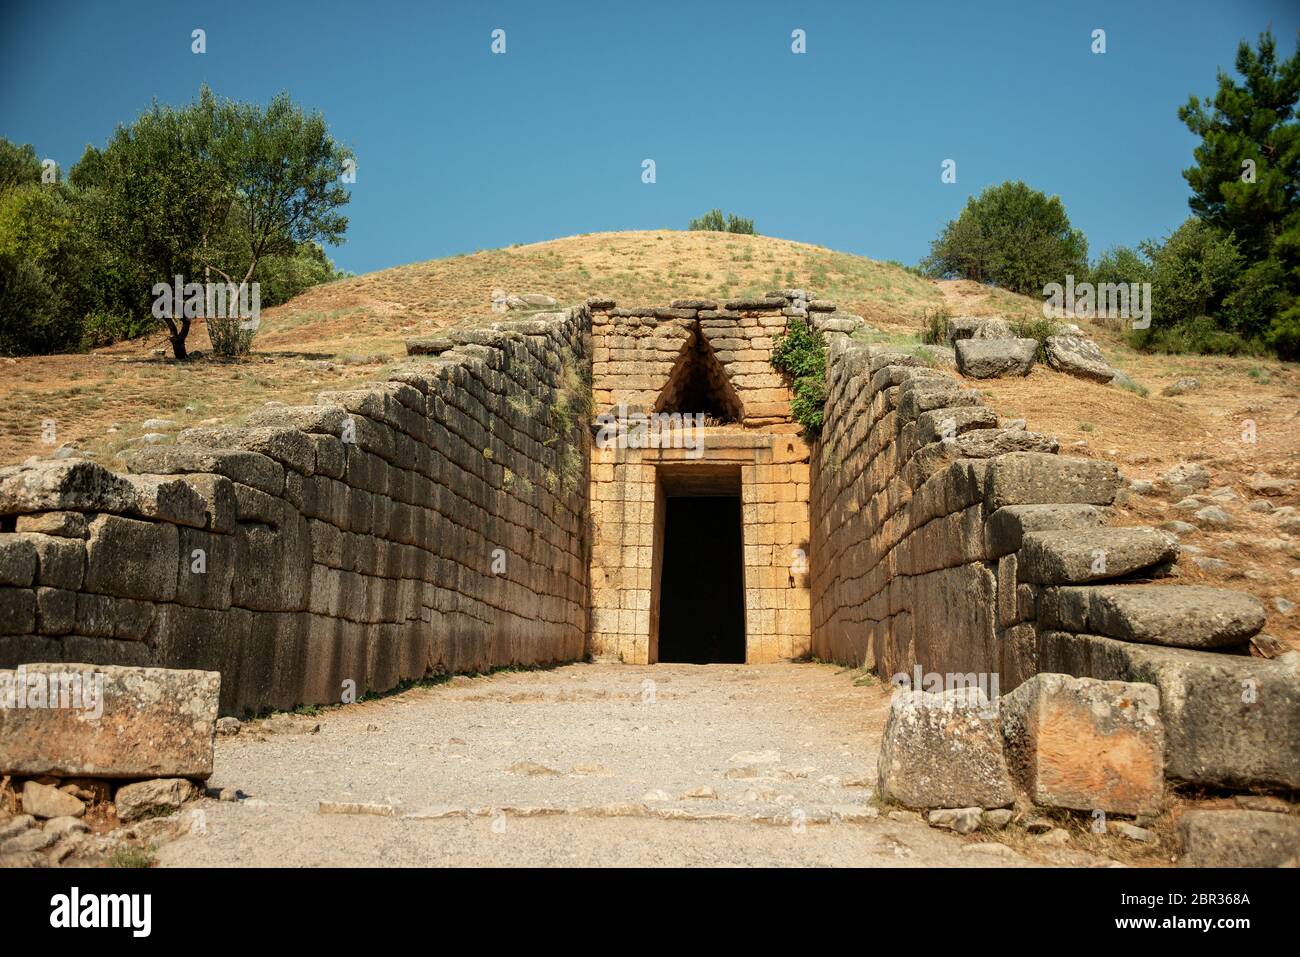 El triángulo que se coronaba por encima de la entrada al Tesoro de Atreus, una tumba de tipo colmena que data del siglo 13 a.C. en la antigua Grecia. Foto de stock